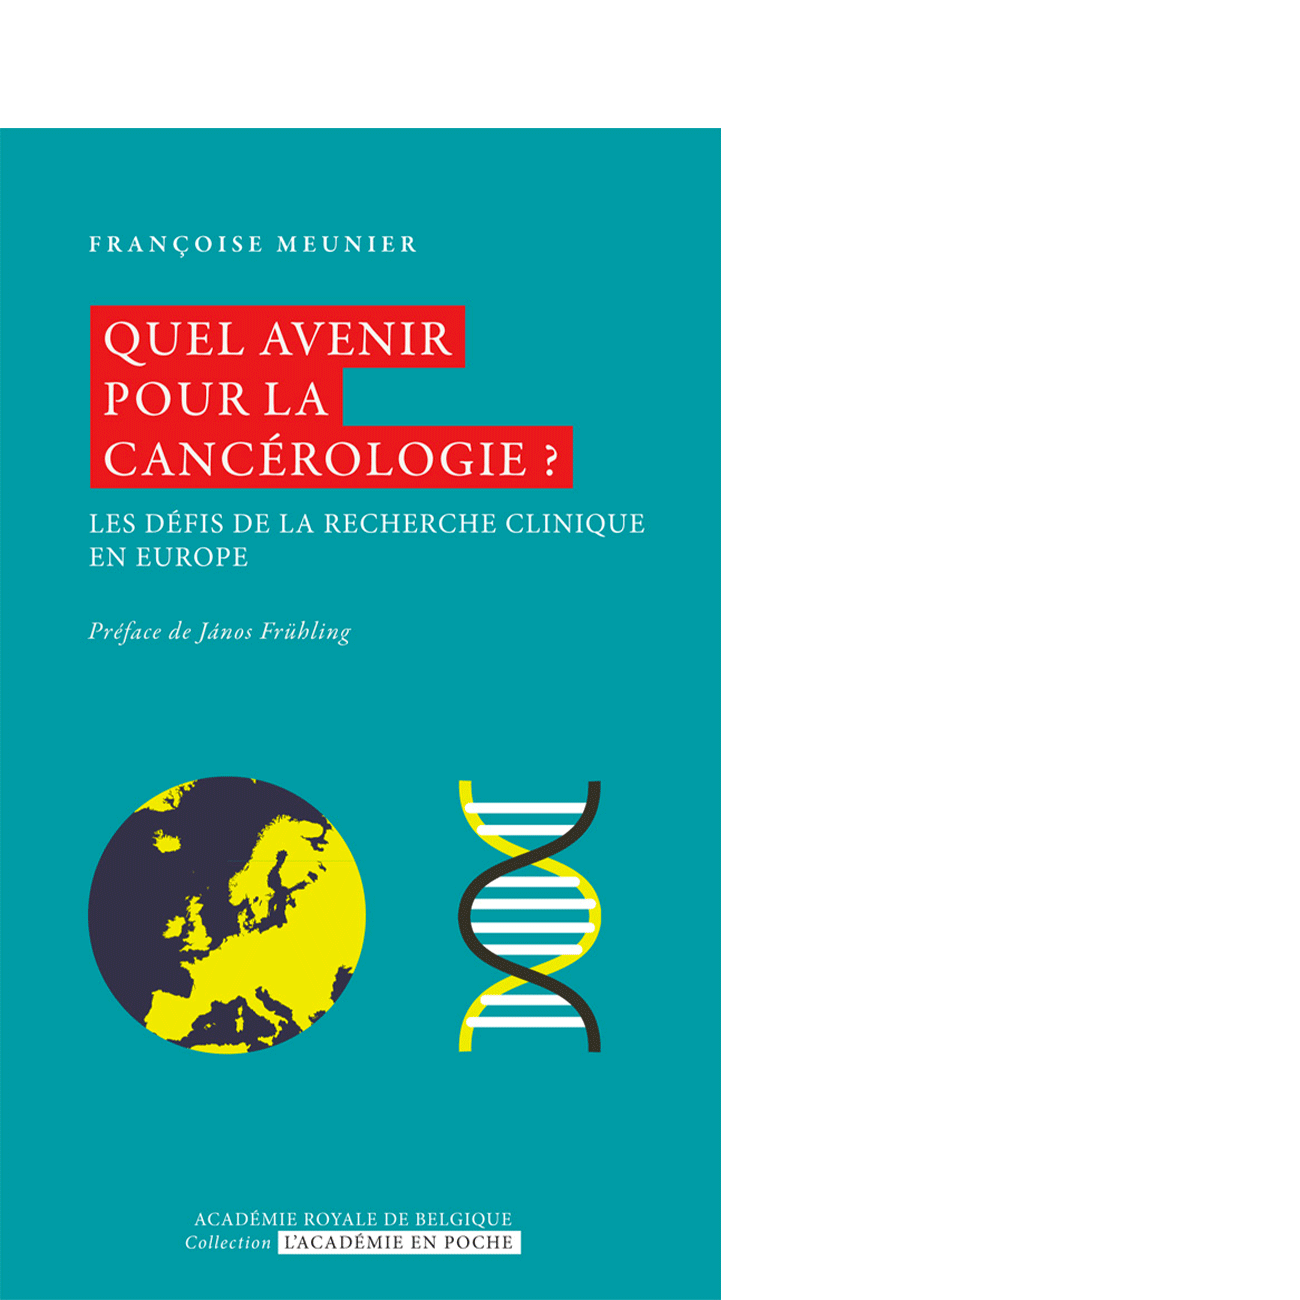 Quel avenir pour la cancérologie ?